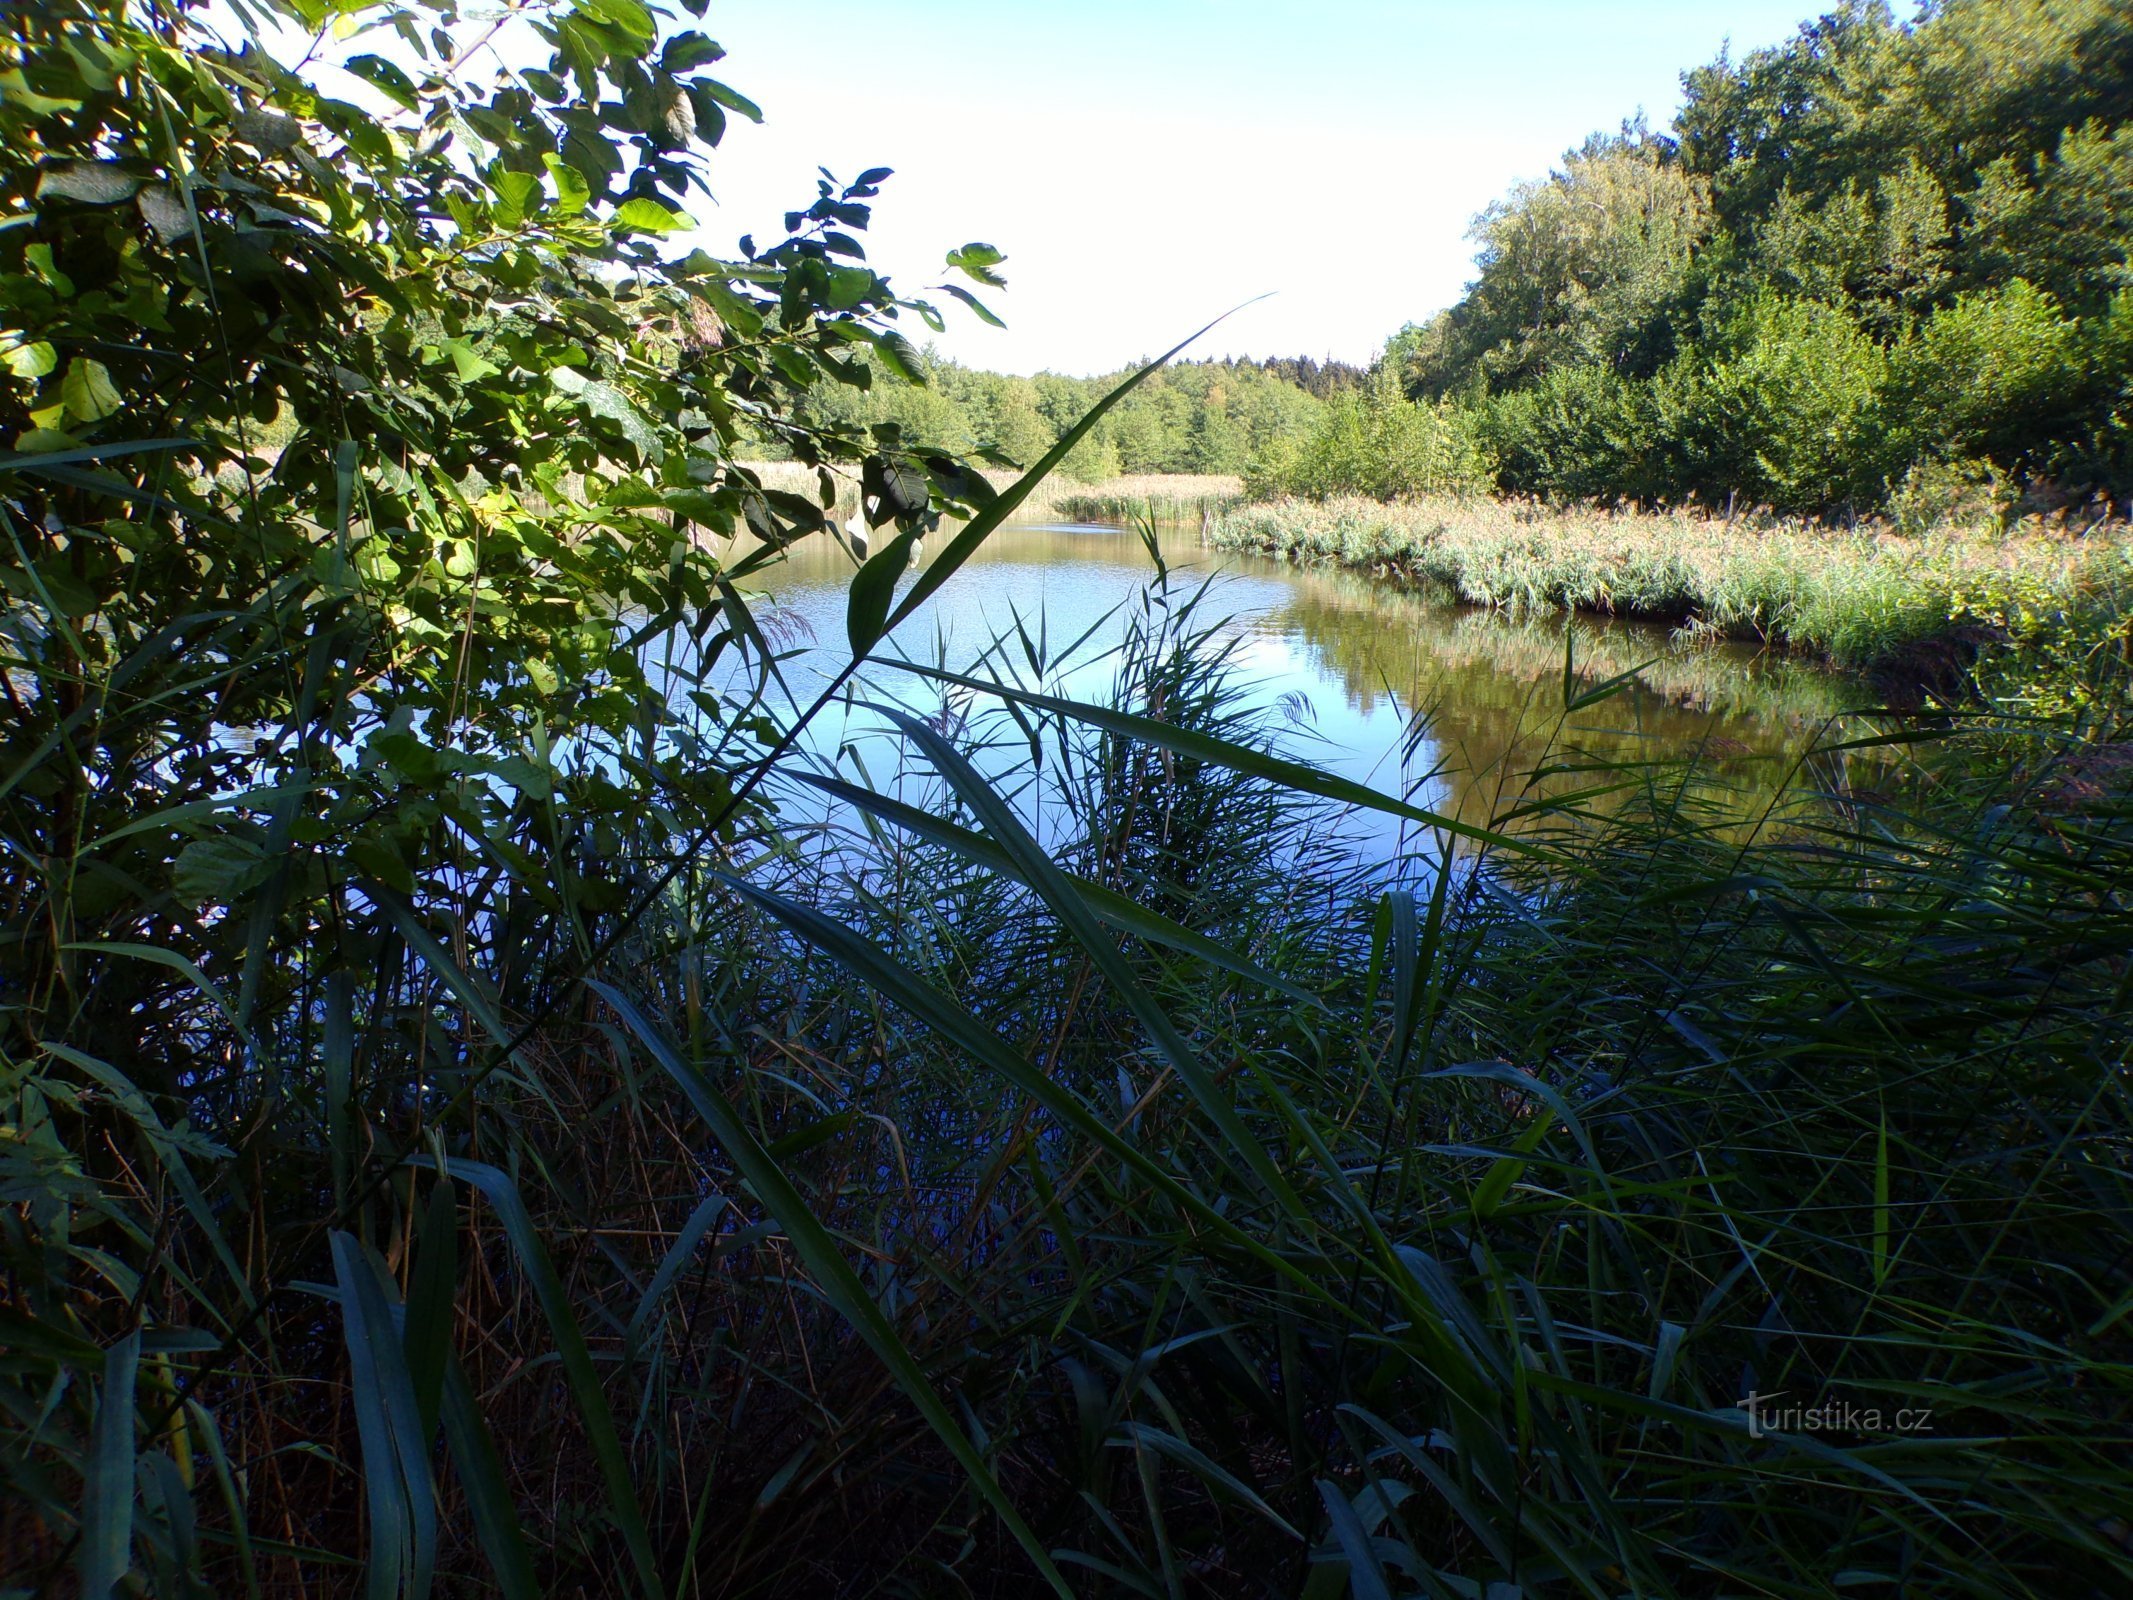 Hlinský rybník (Petrovice nad Orlicí, 1.9.2022/XNUMX/XNUMX)